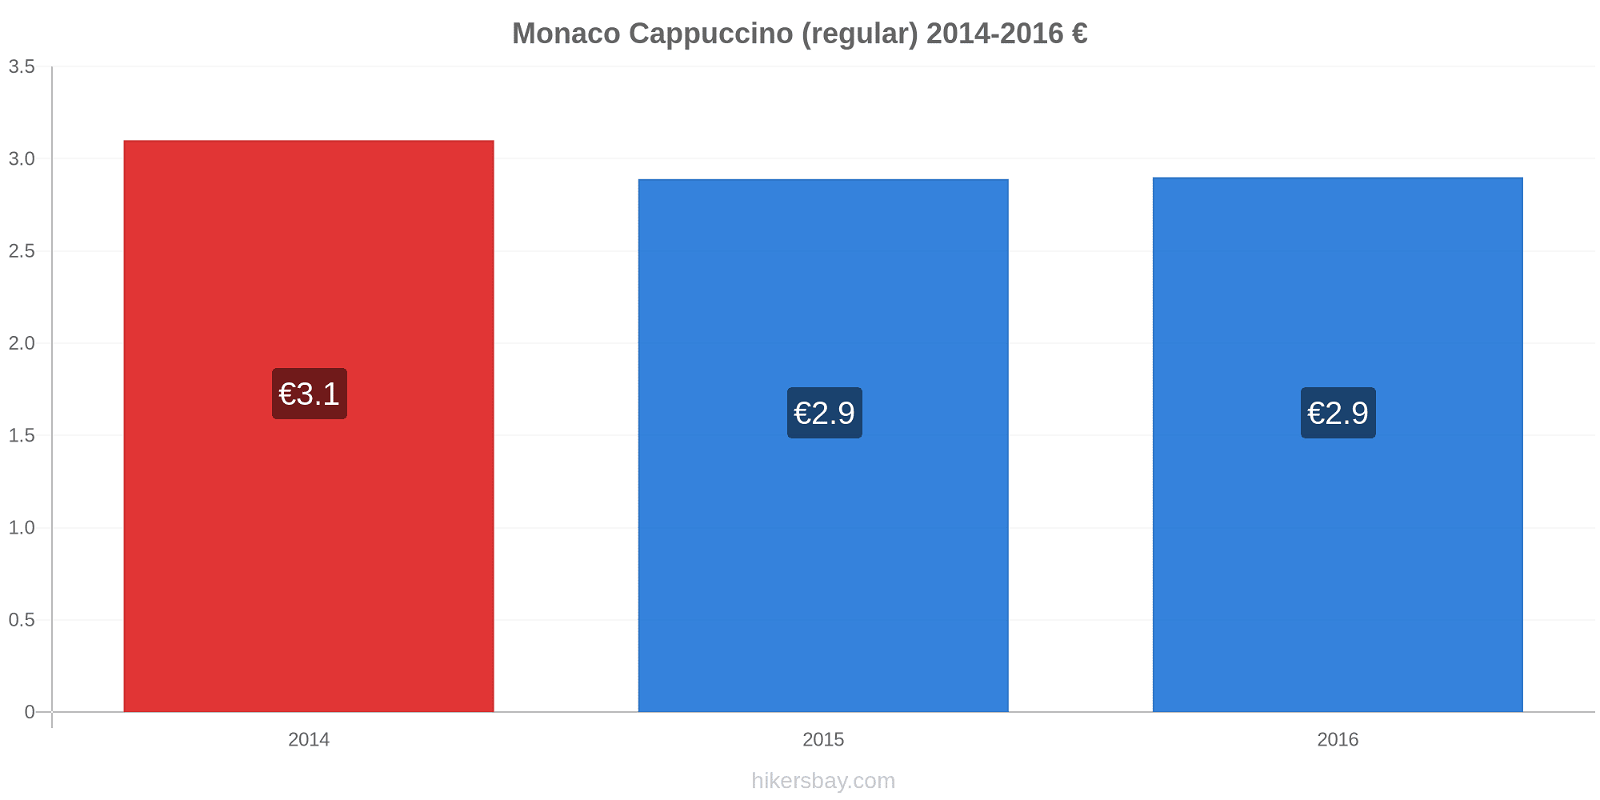 Monaco price changes Cappuccino (regular) hikersbay.com